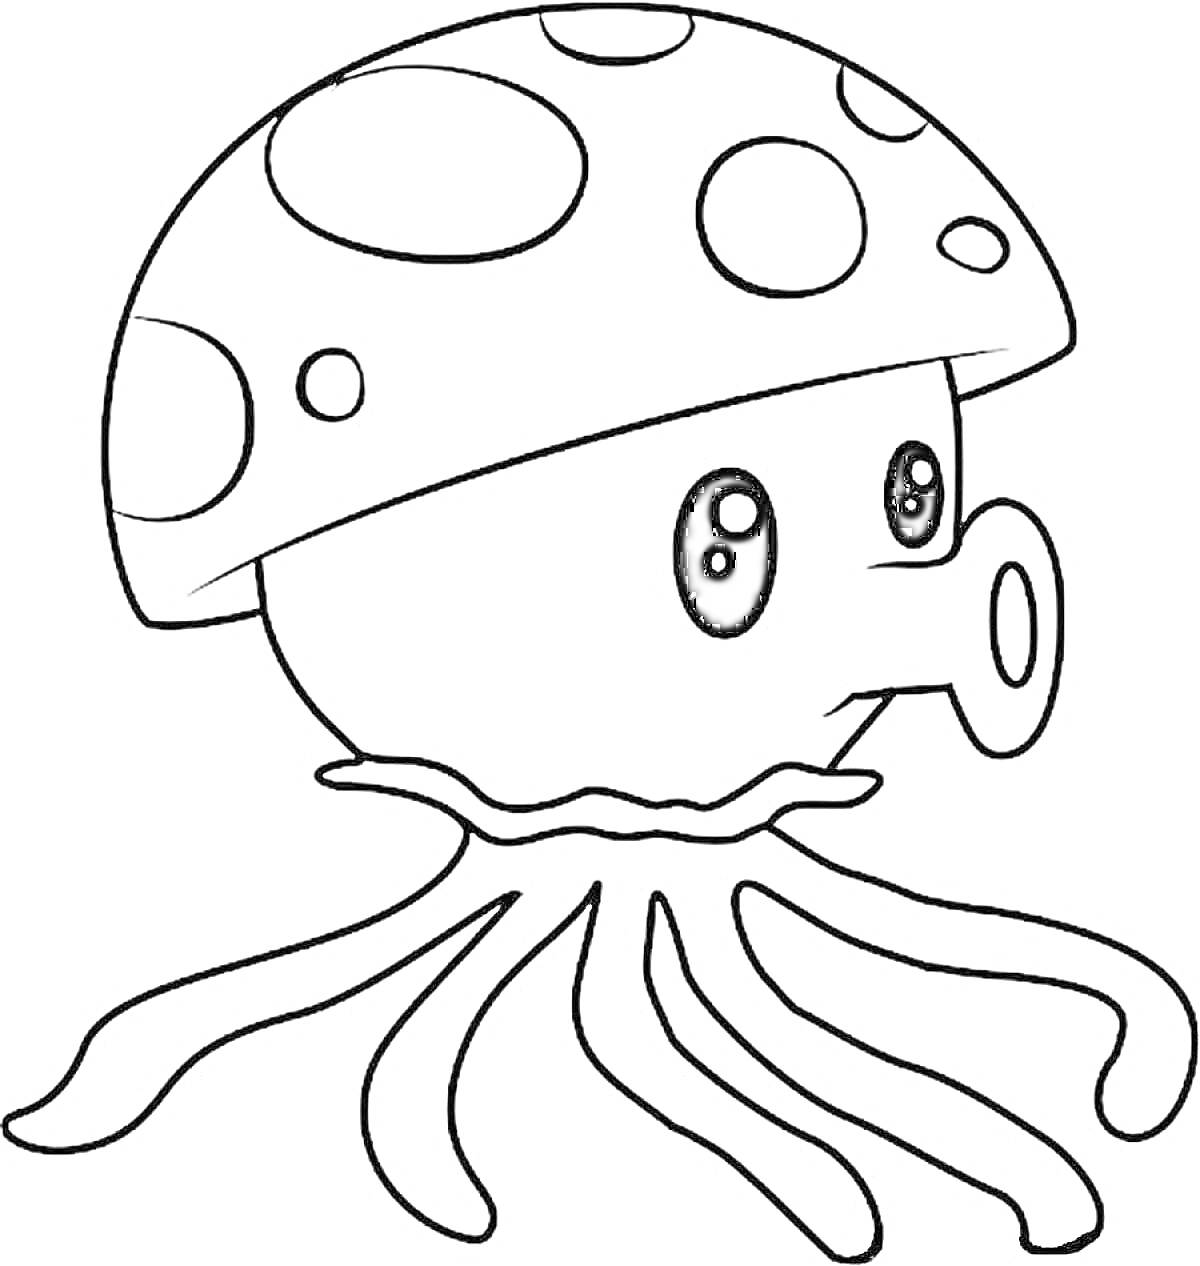 Раскраска Гриб, подводный стиль, с щупальцами и пятнами на шляпке